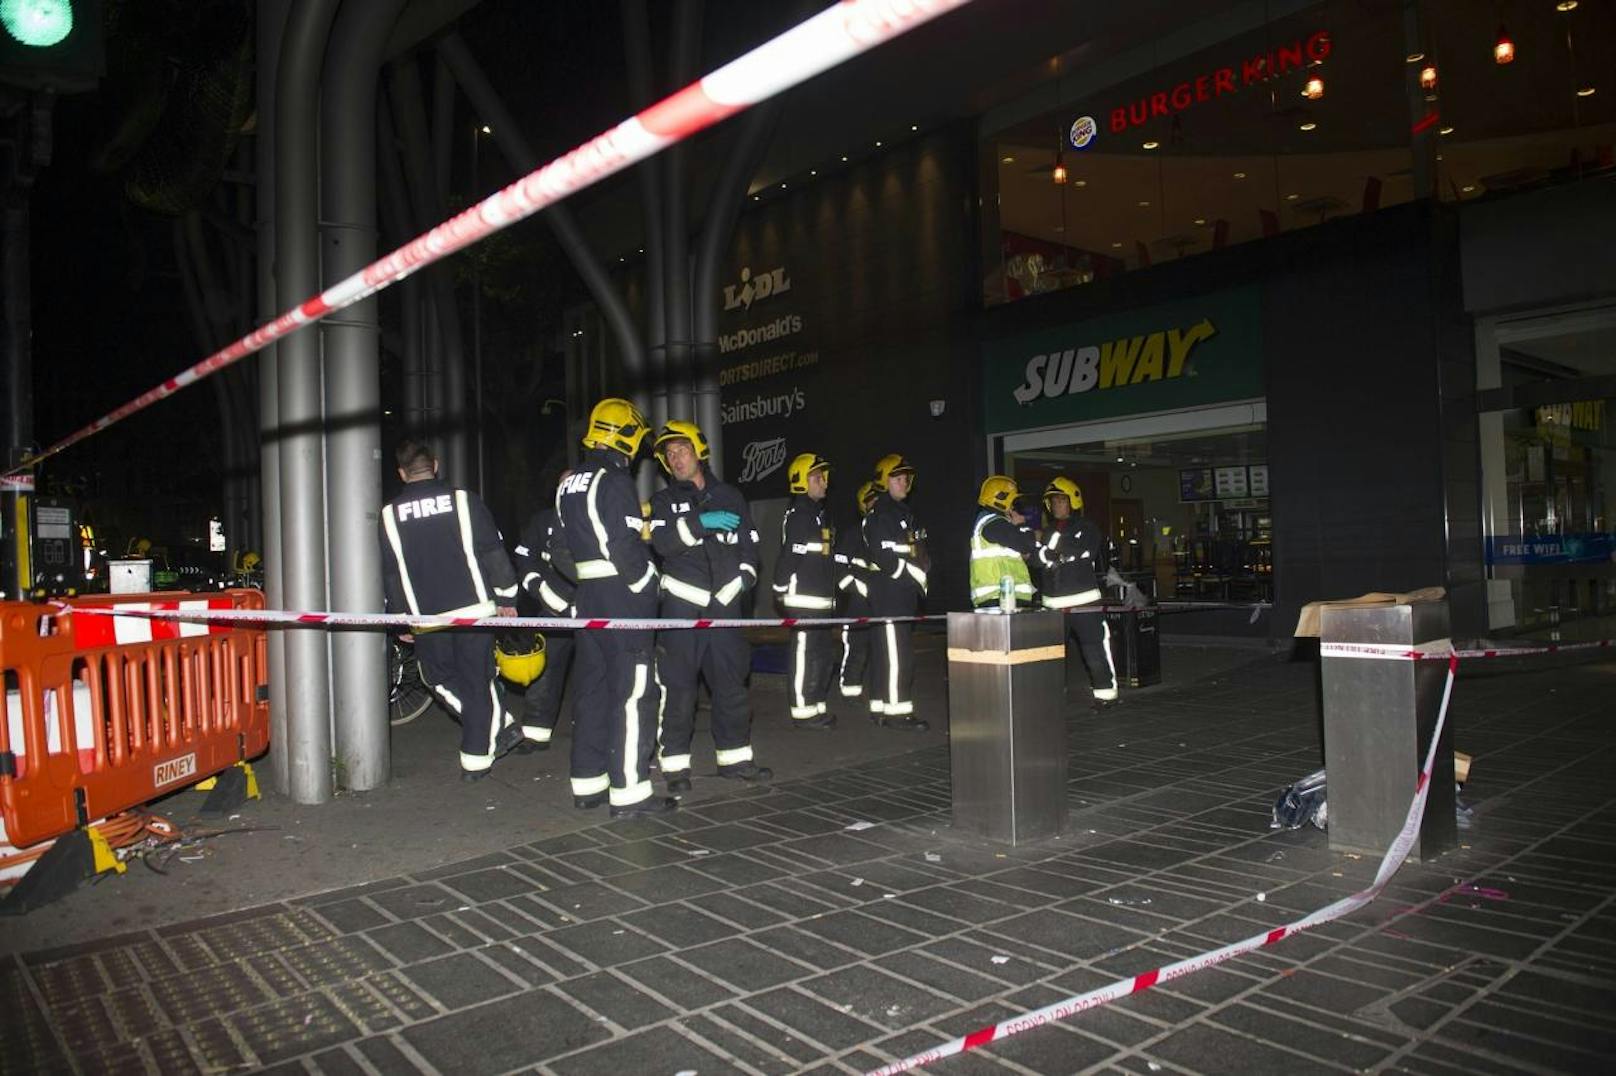 Unbekannte attackierten mehrere Personen im Londoner Stratford Einkaufszentrum mit Säure. 